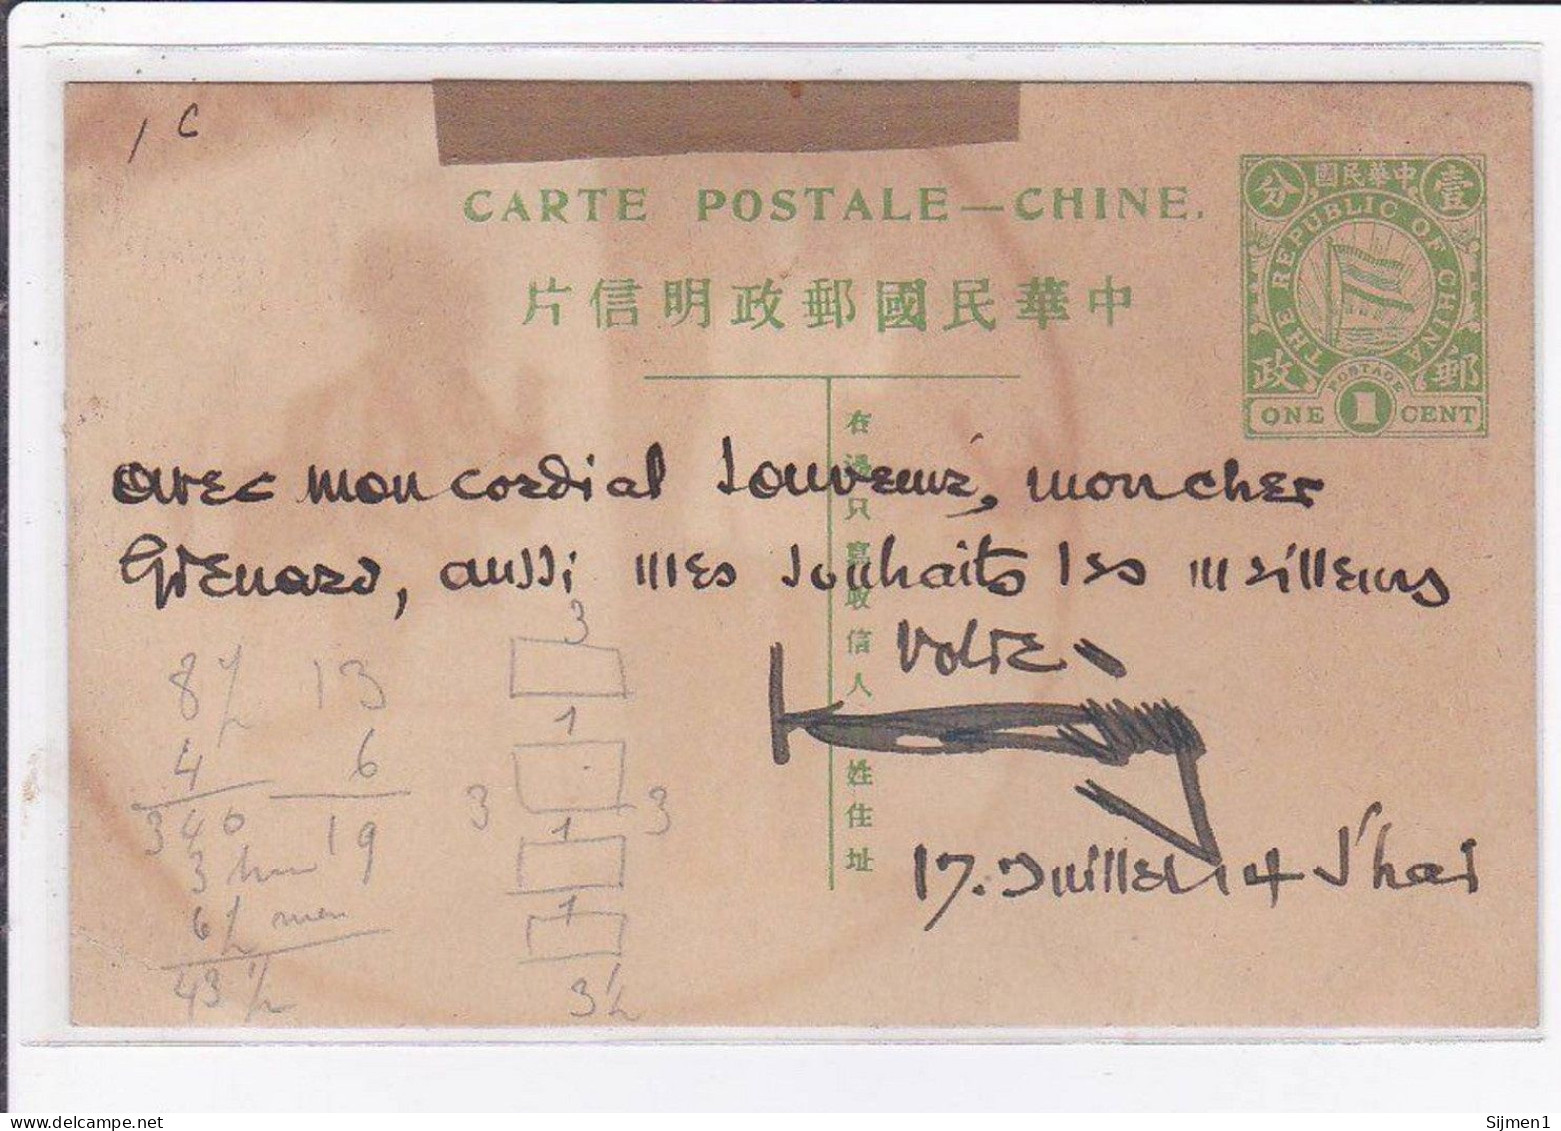 CHINE / CHINA : lot de 17 entiers postaux illustrés de la même archive - 17 postal stationery - état